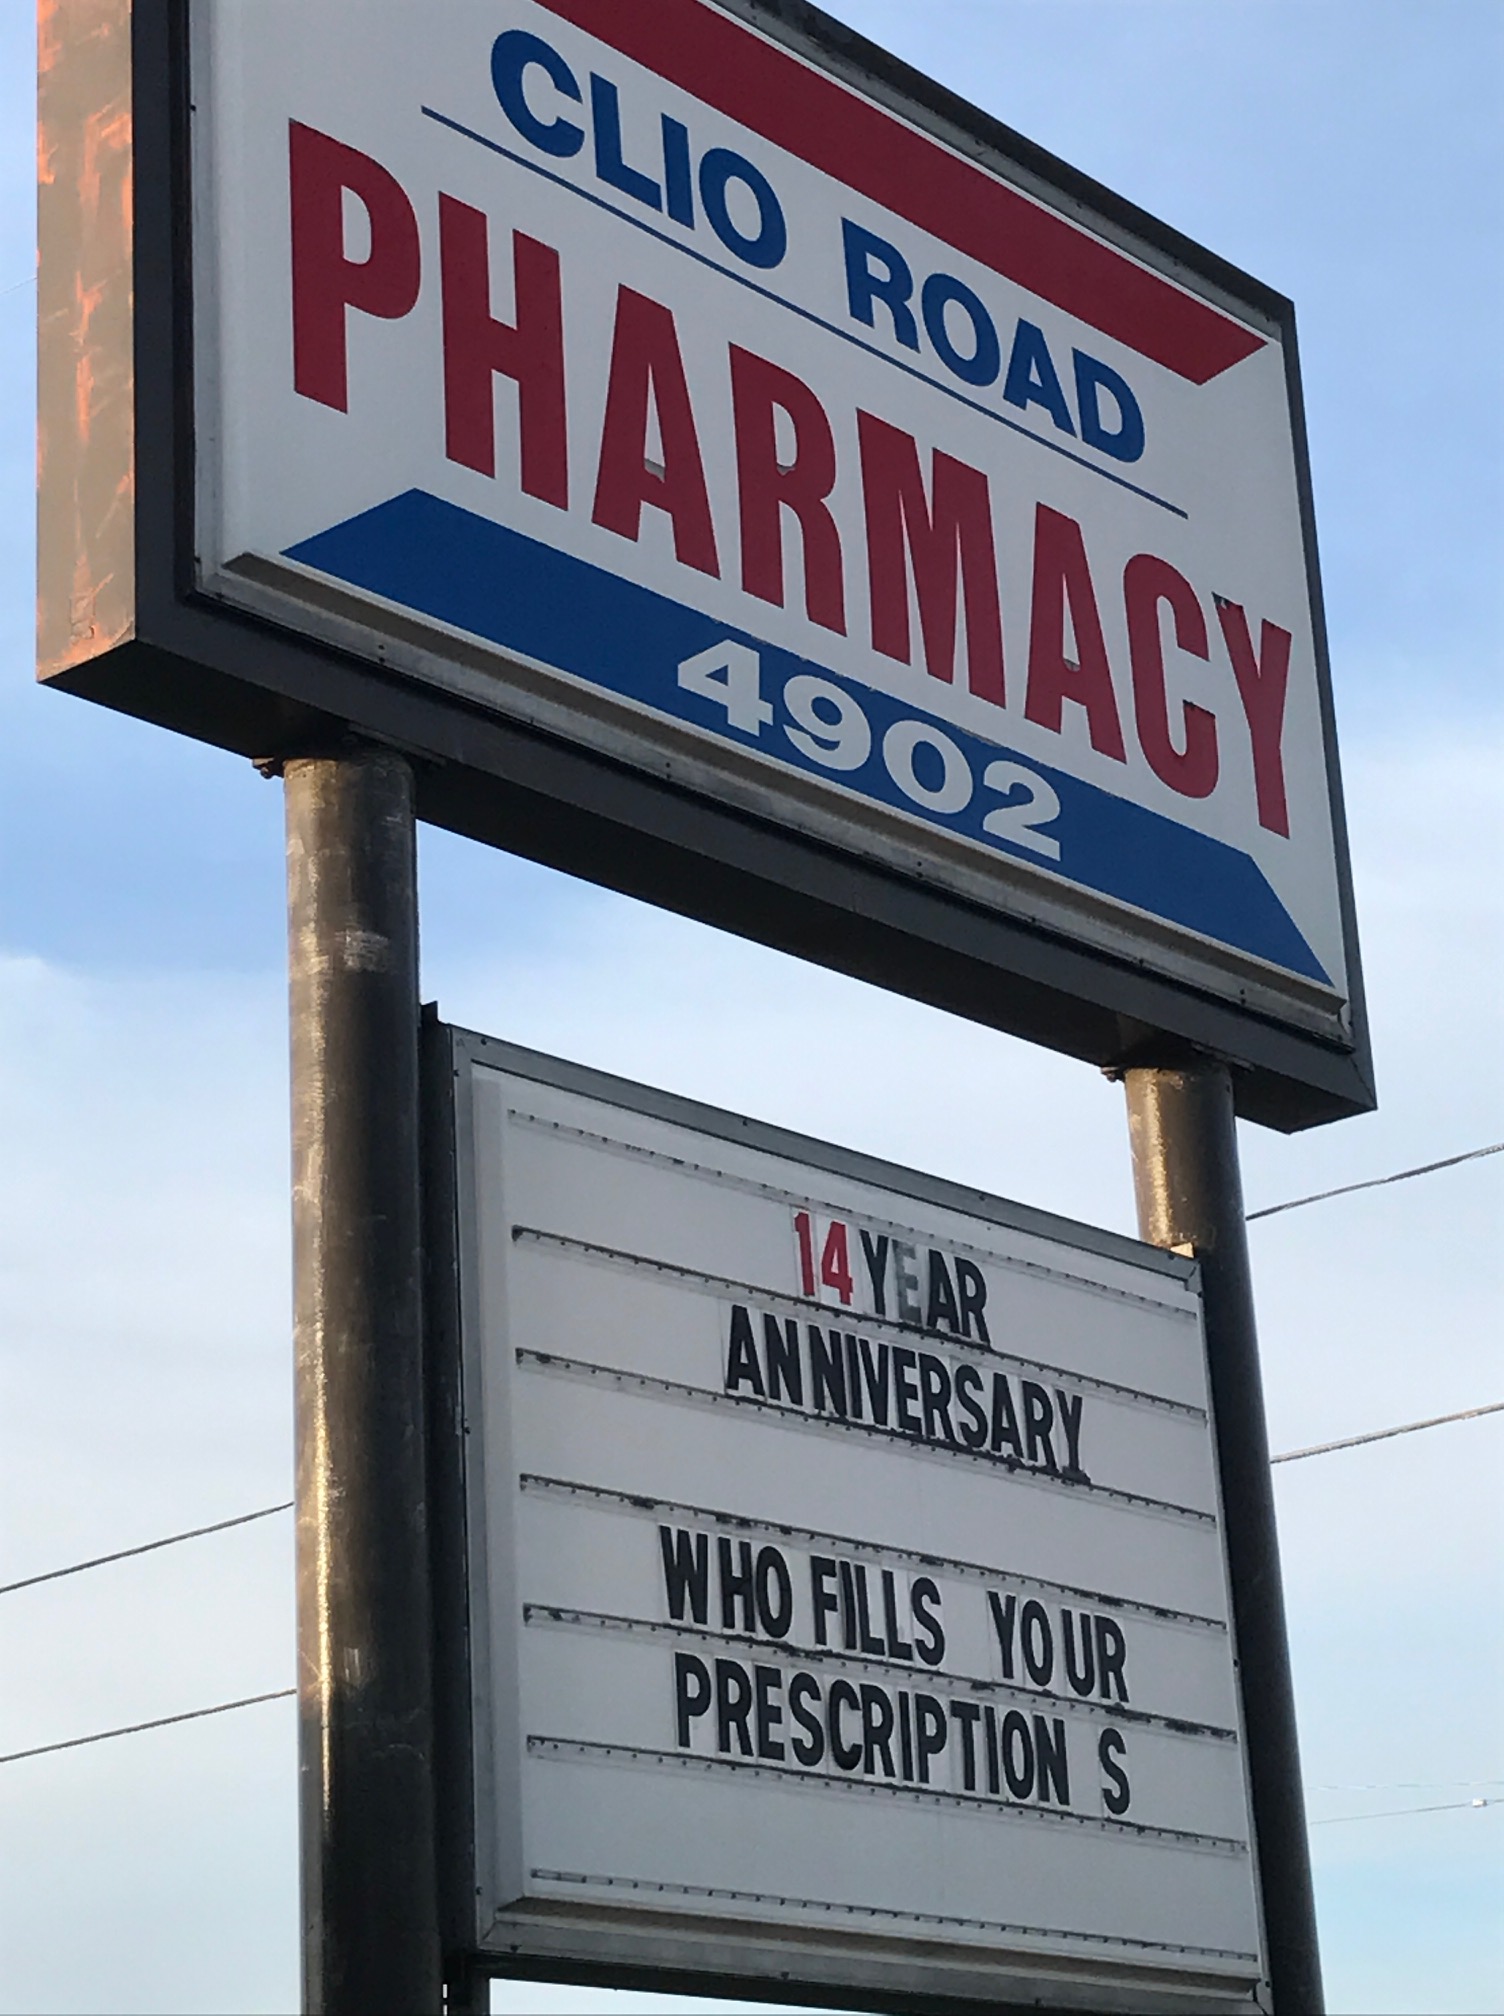 Clio Road Pharmacy